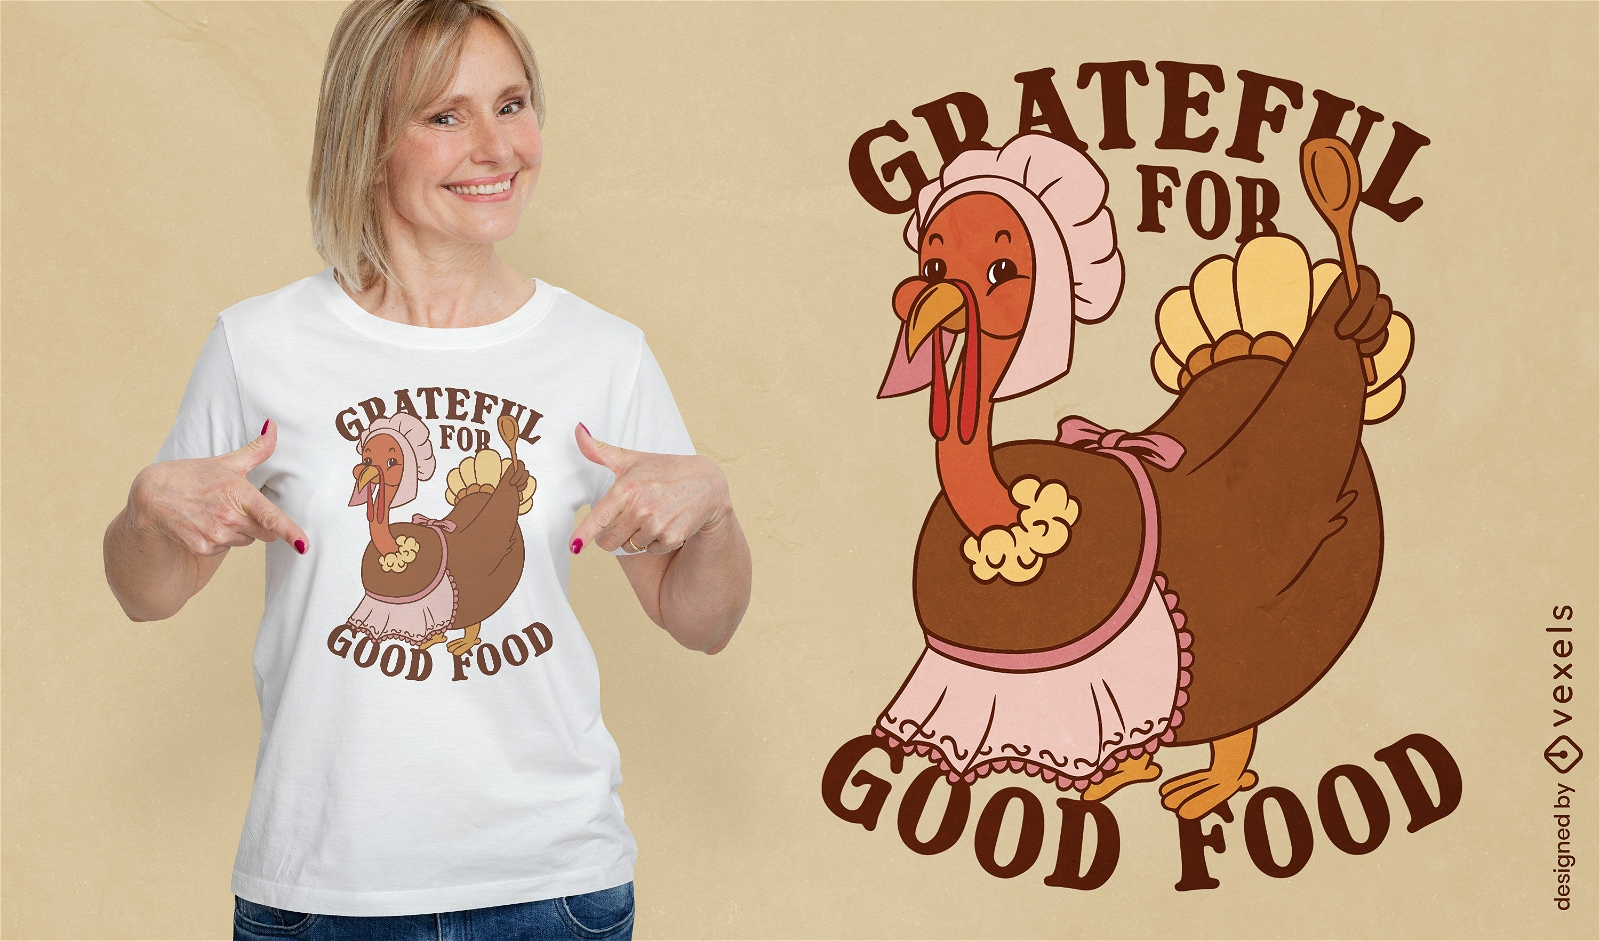 Grateful for good food t-shirt design